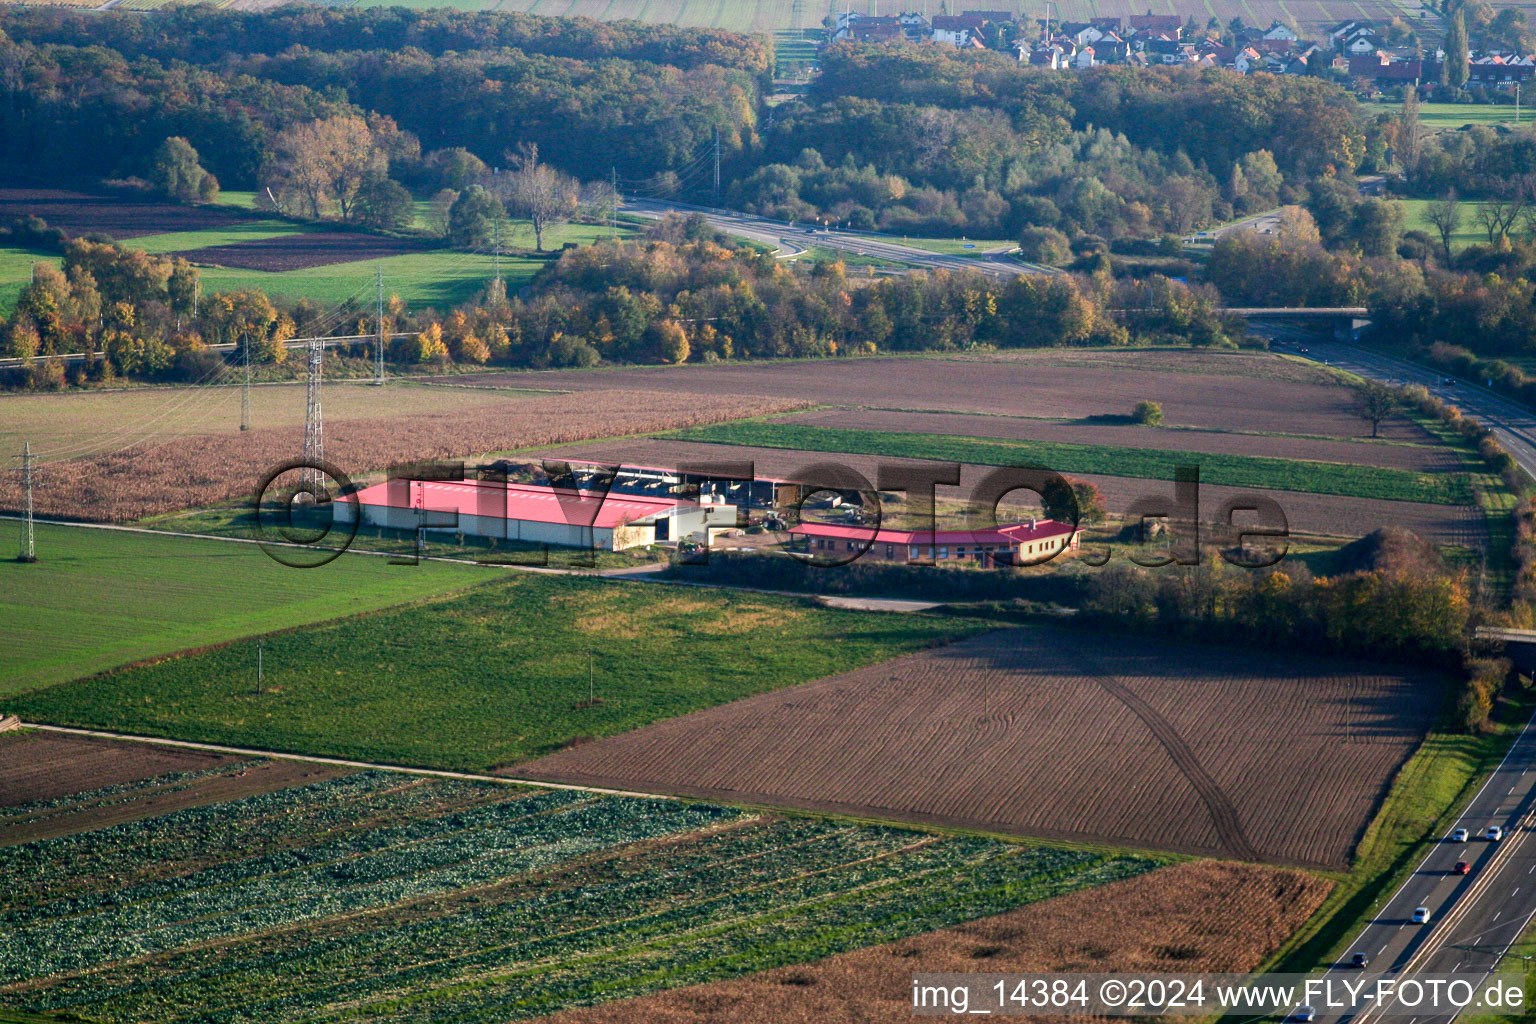 Ferme d'œufs de ferme de poulets à Erlenbach bei Kandel dans le département Rhénanie-Palatinat, Allemagne hors des airs